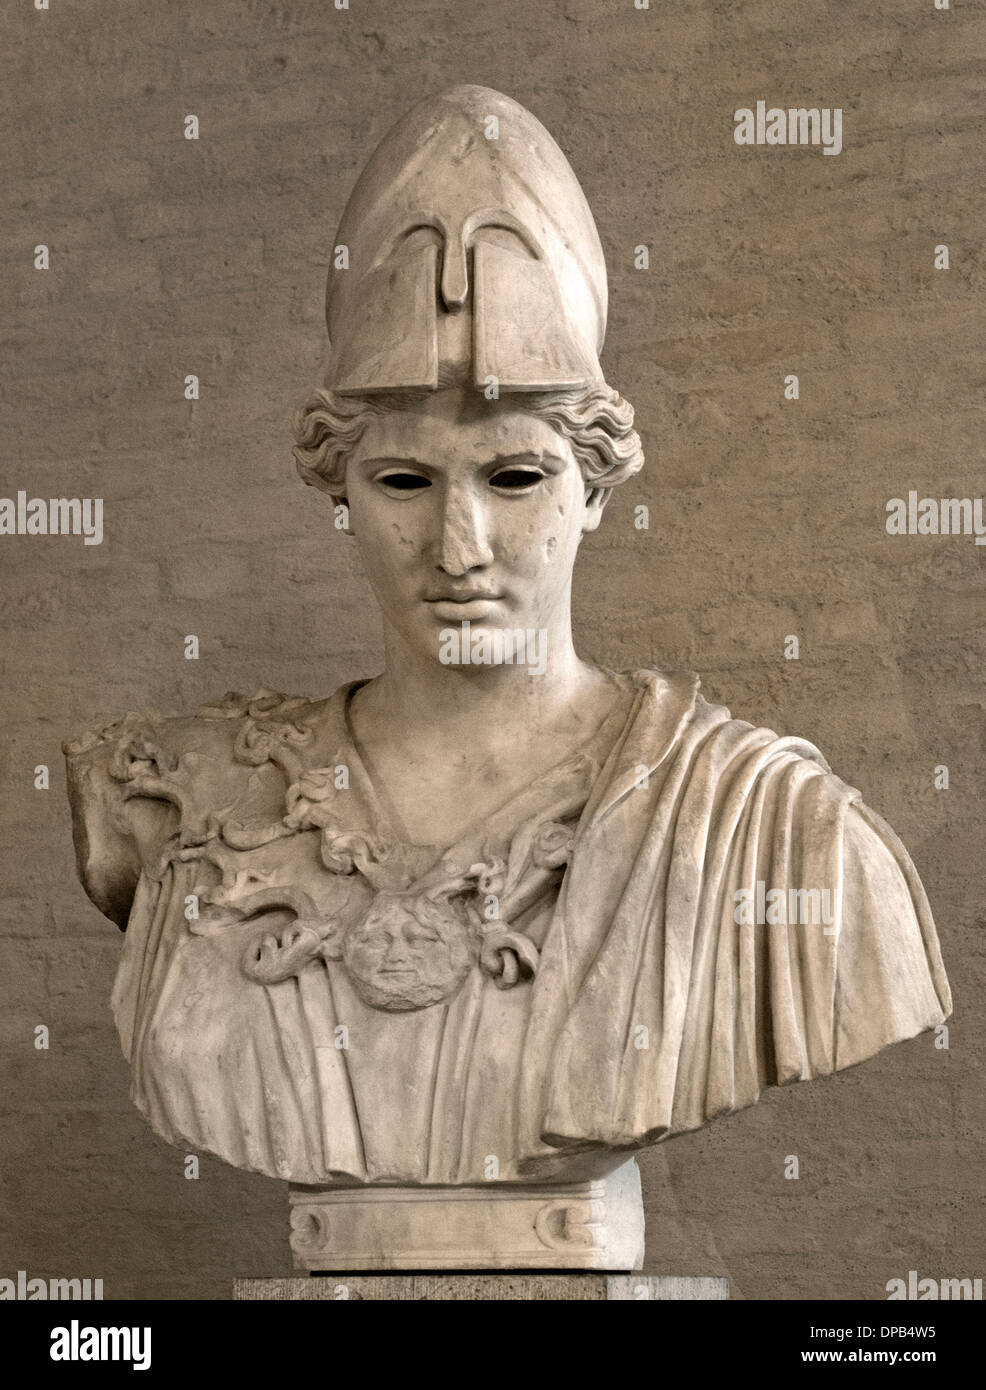 Atenea Diosa griega de la sabiduría y de la guerra copia romana tras la estatua de mármol Kresilas 430 A.C. Foto de stock